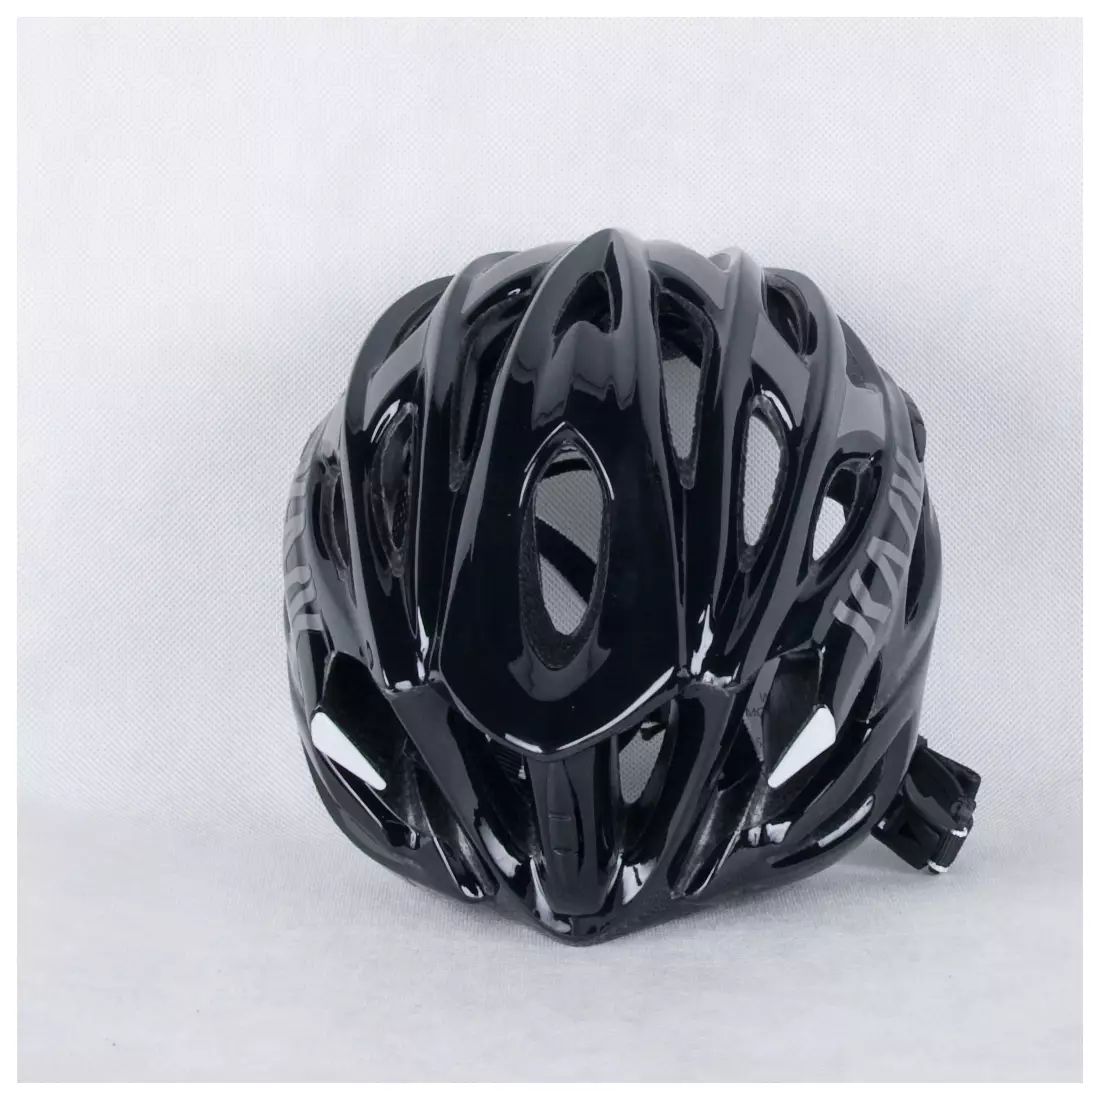 MOJITO HELMET - CHE00044.201 NERO bicycle helmet